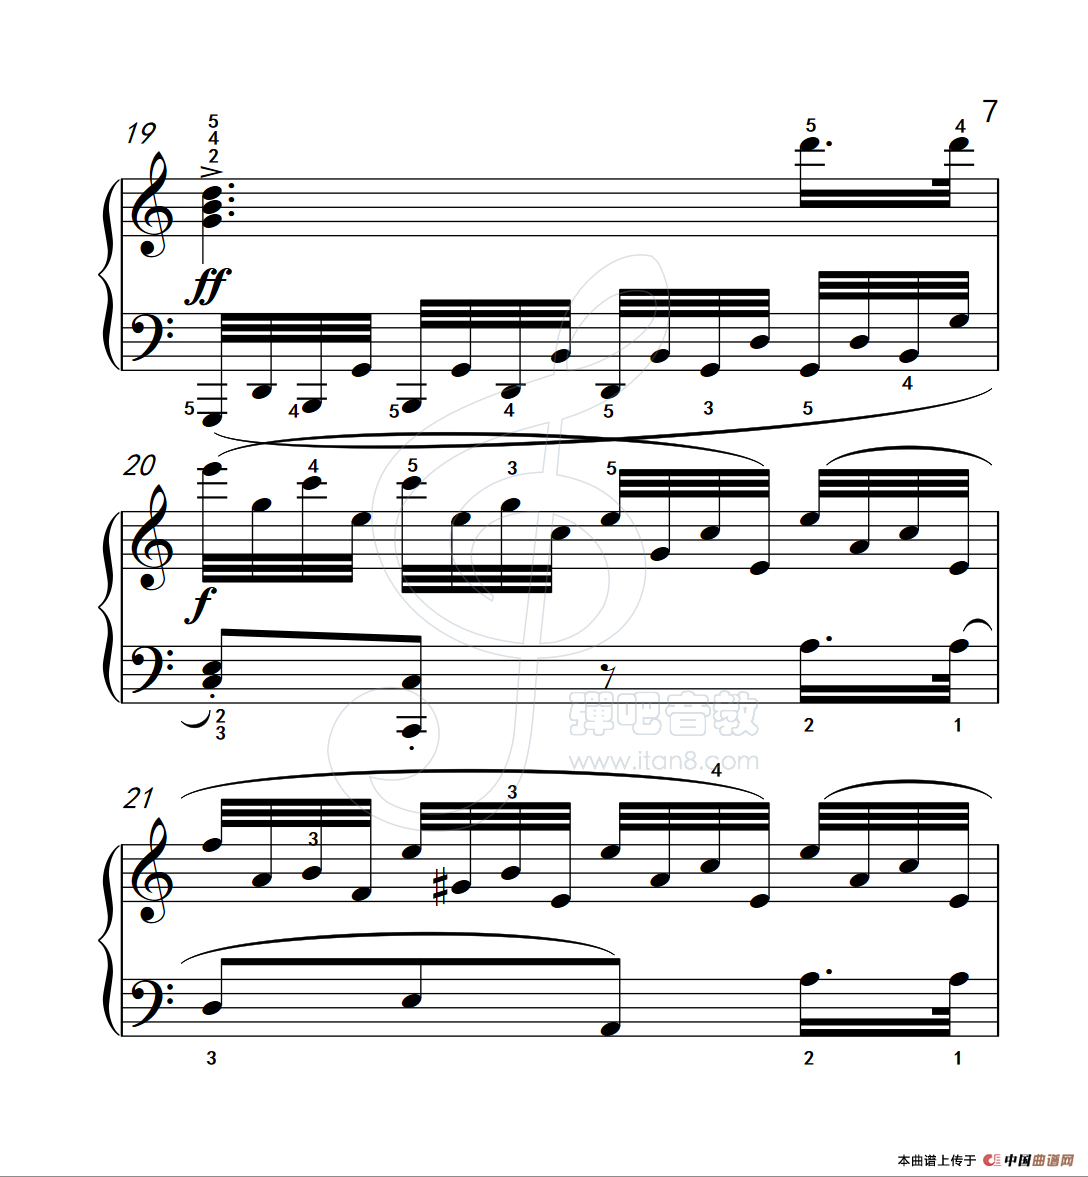 《练习曲 37》钢琴曲谱图分享